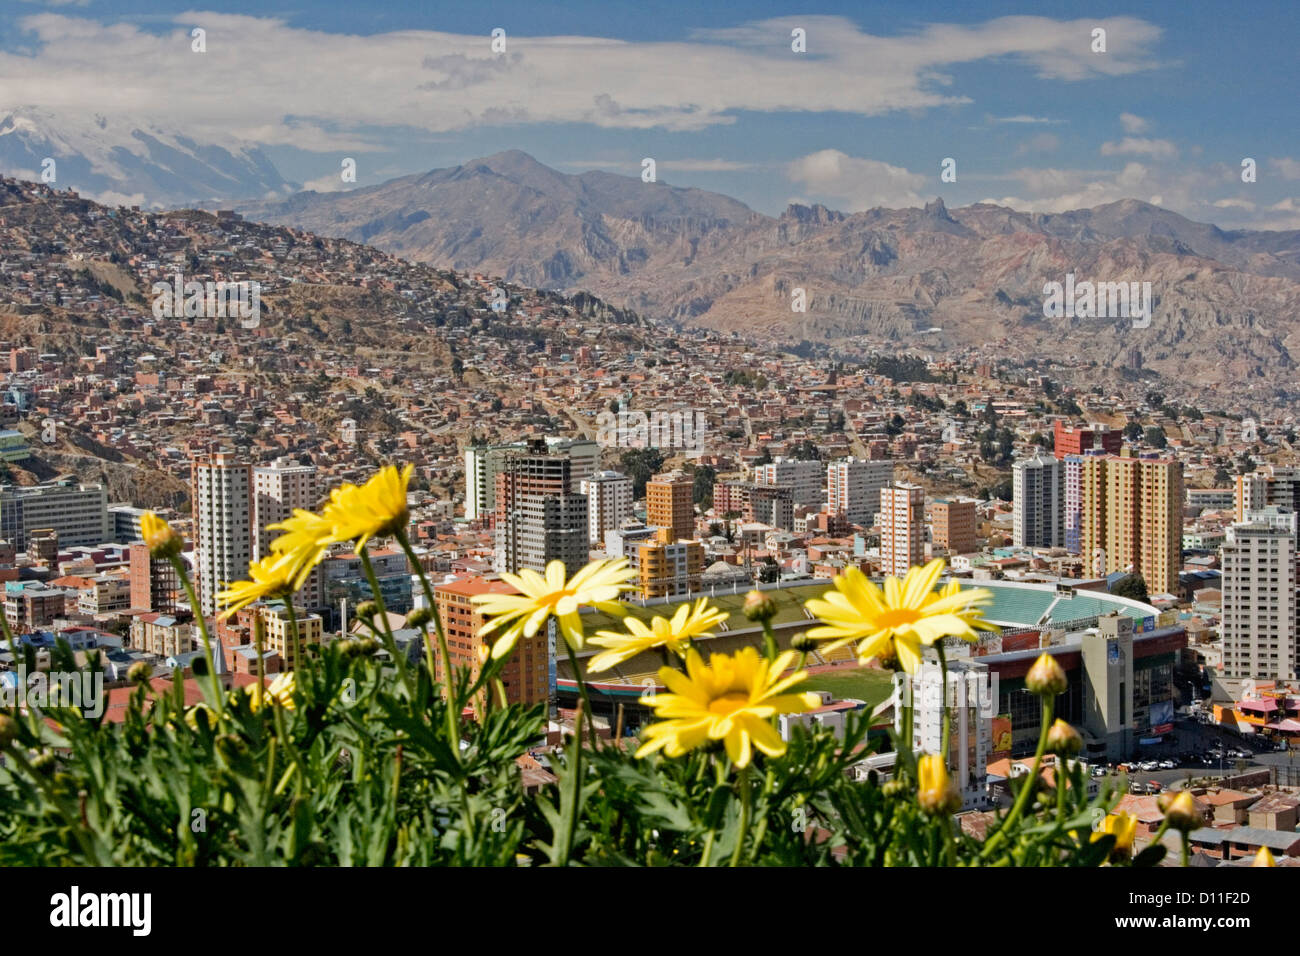 Vista della città boliviana di La Paz con grattacieli in valle circondata da Snow capped montagne delle Ande e fiori in primo piano Foto Stock